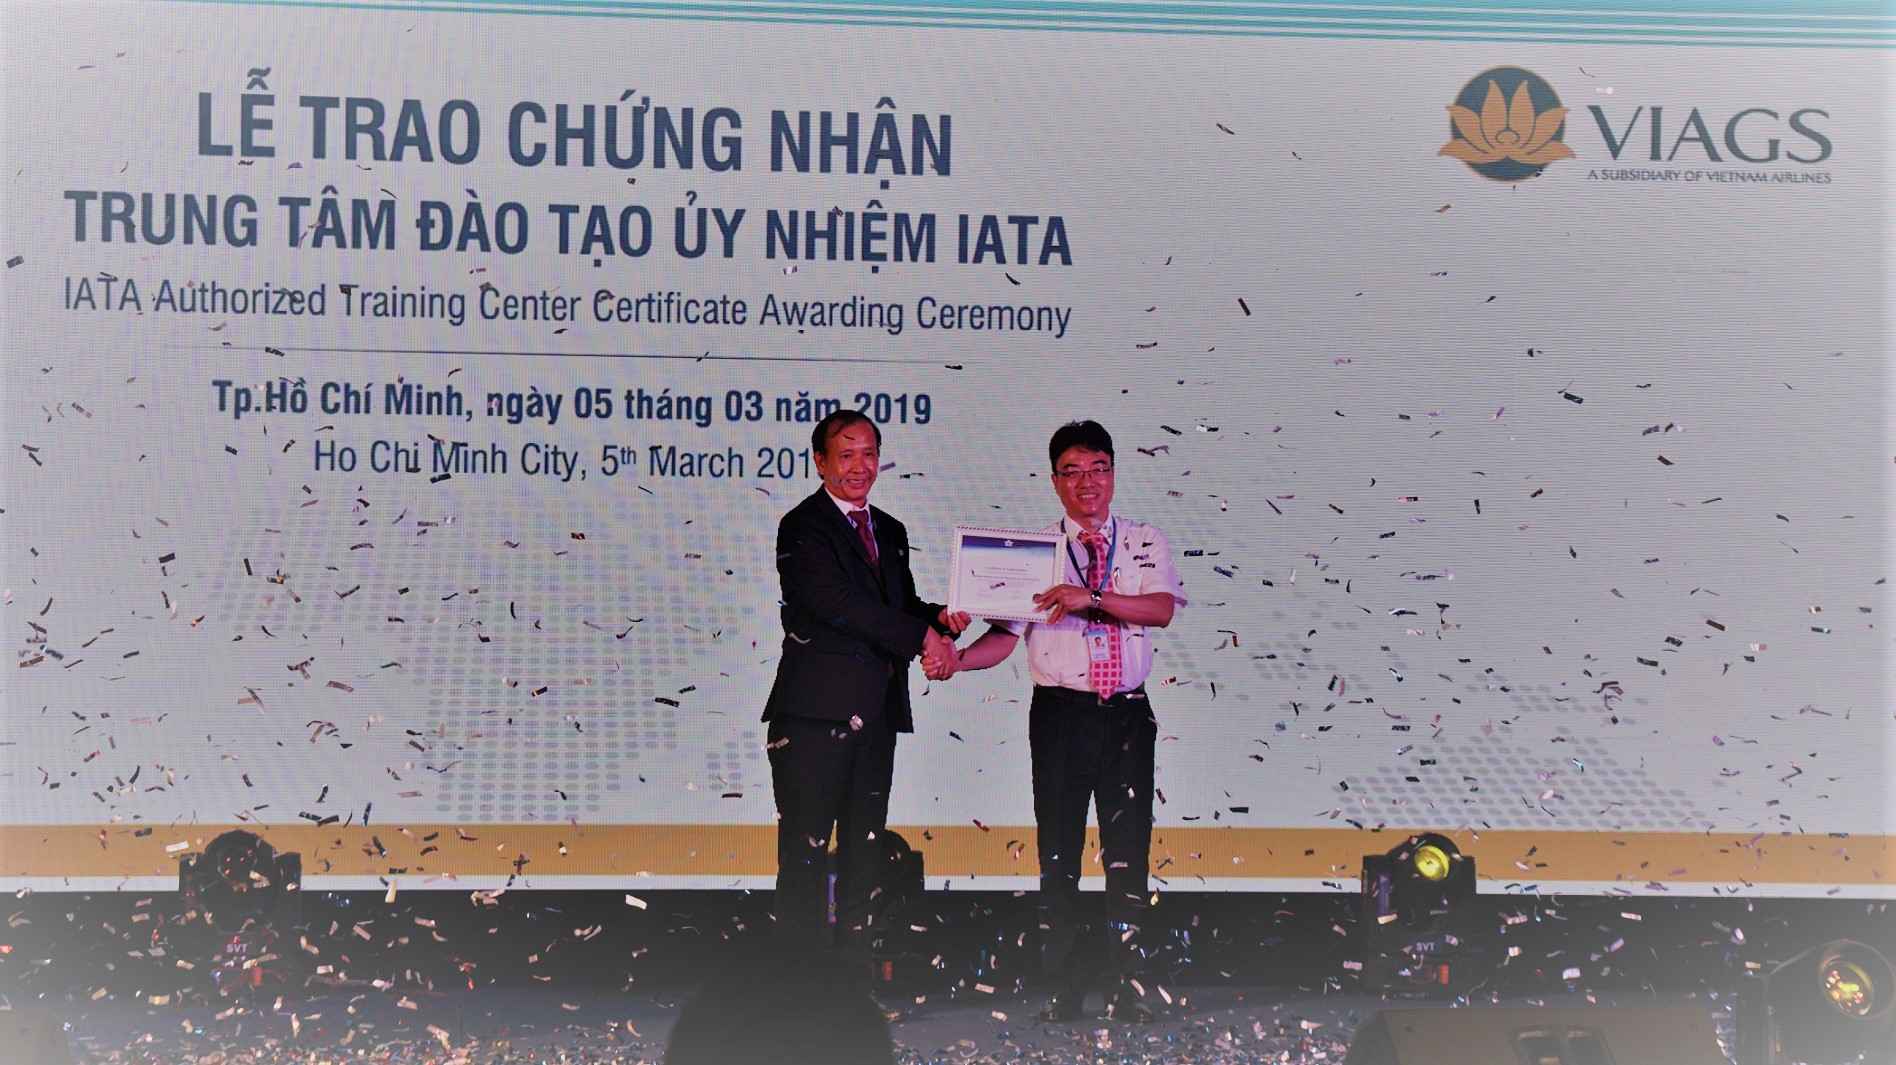 Sự kiện VIAGS trở thành Trung tâm Đào tạo ủy nhiệm IATA đã góp phần khẳng định công tác đào tạo, chất lượng dịch vụ, an toàn của VIAGS cũng như Vietnam Airlines. 